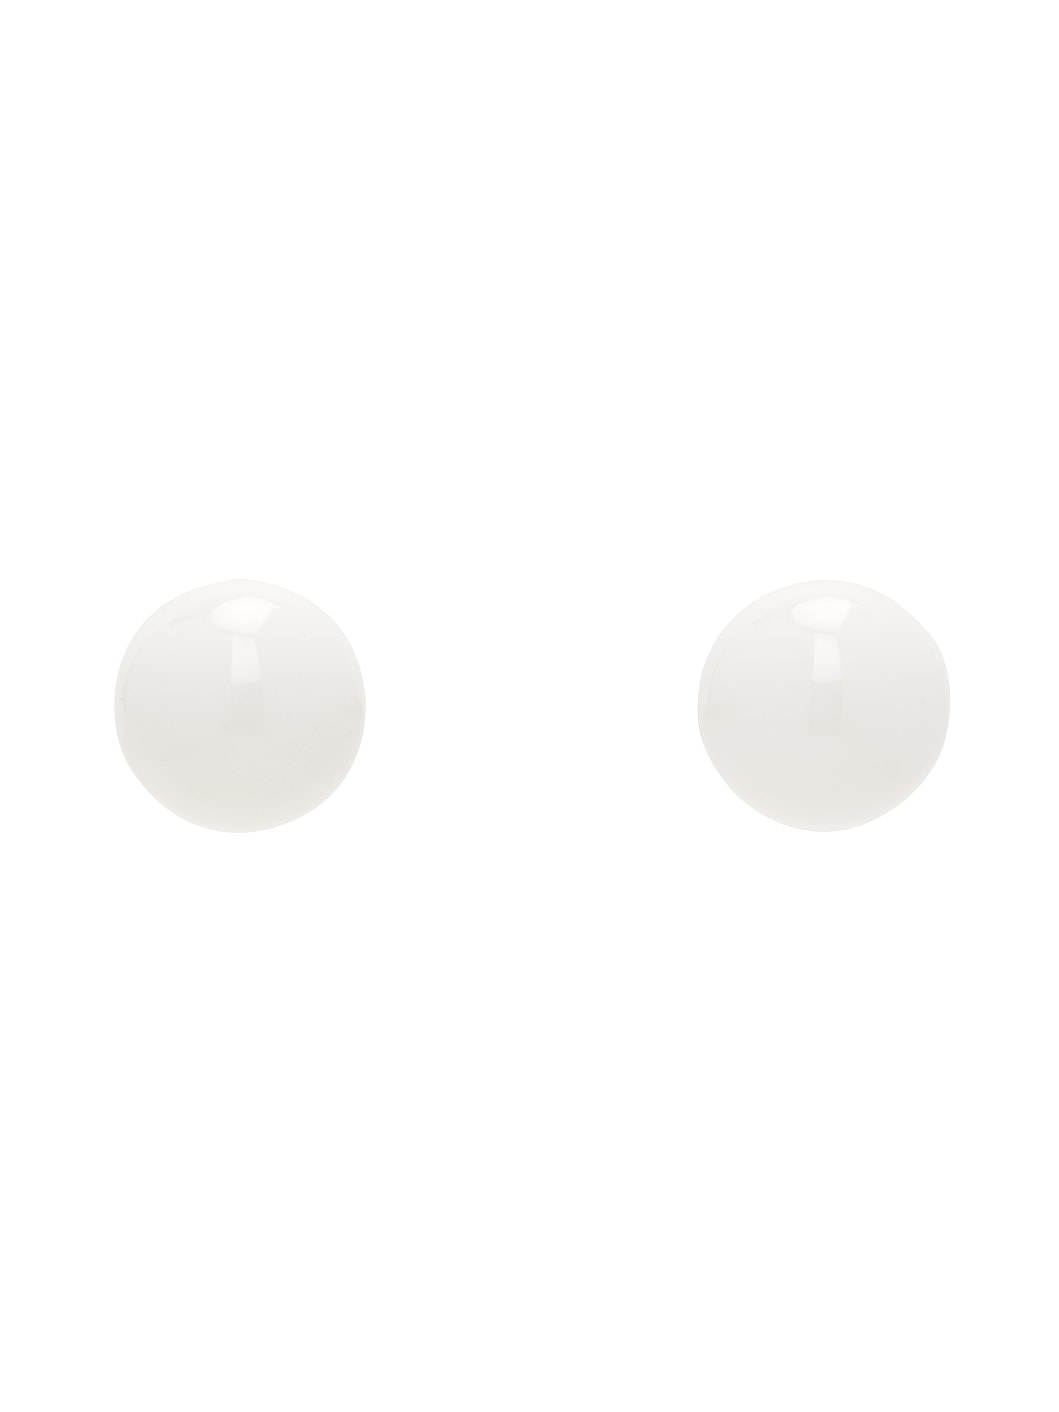 Silver & White Stud Earrings - 1